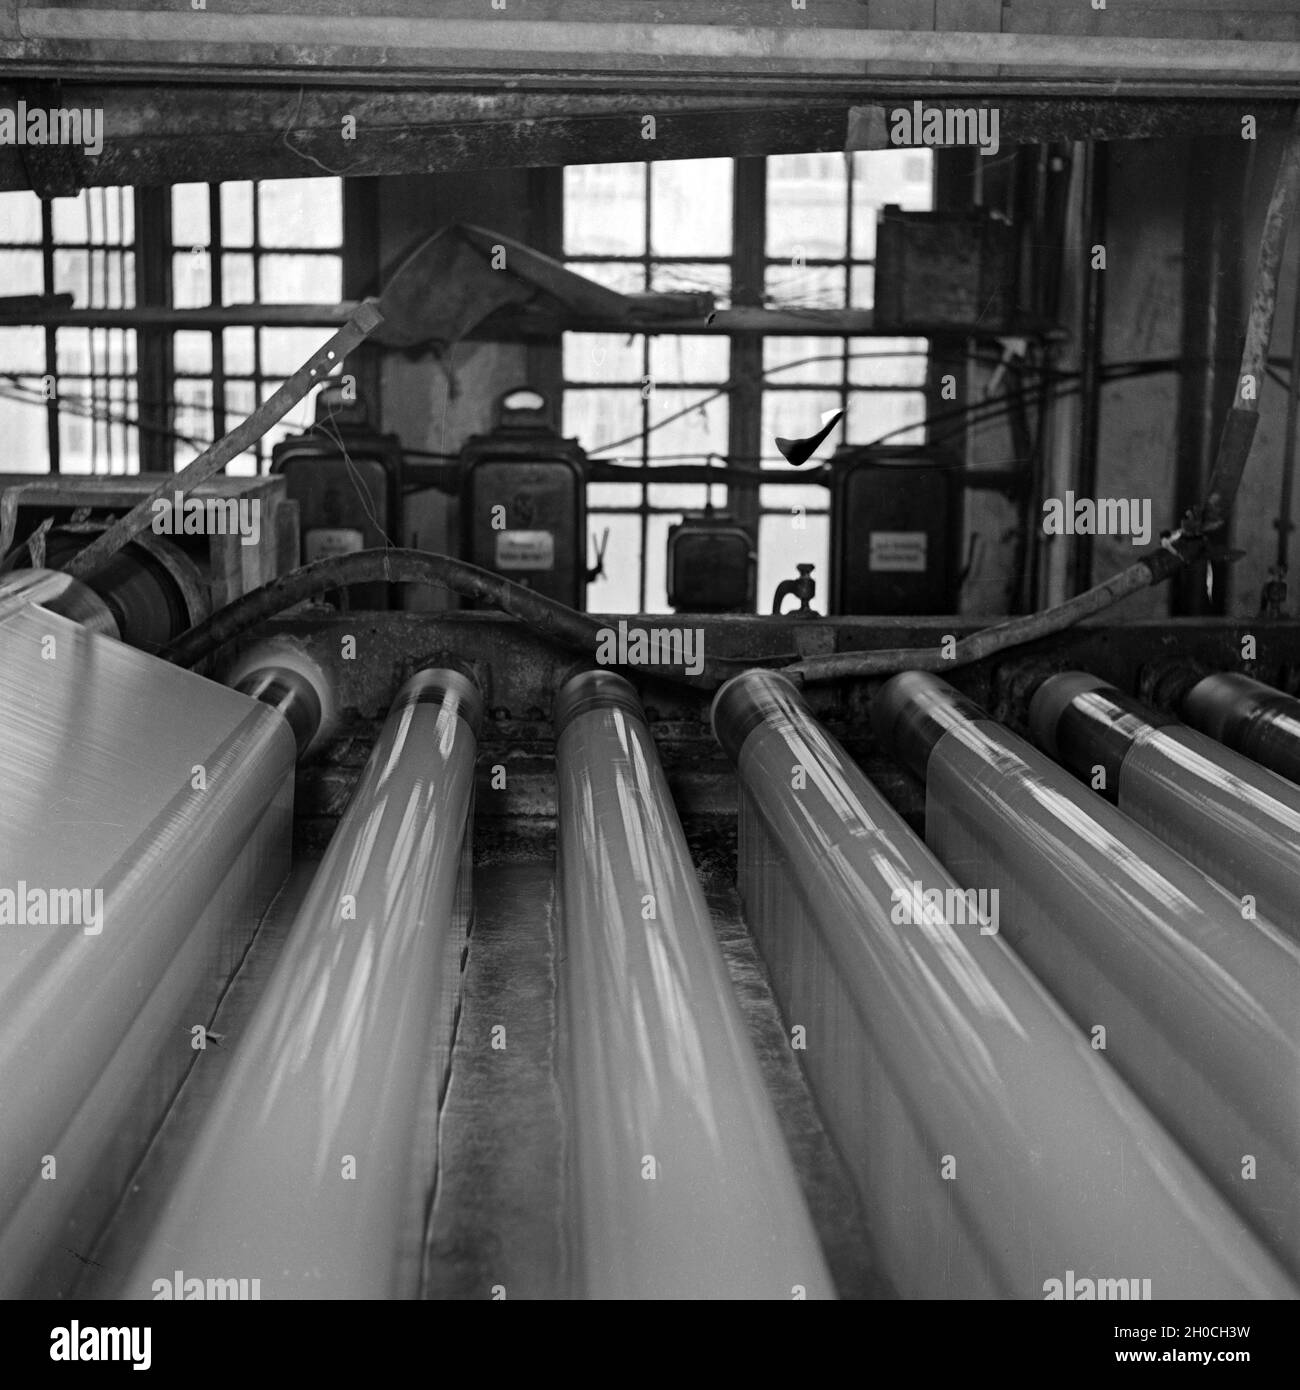 Arbeiter in einer Fabrik zur Herstellung von Cellophan, Deutschland 1930er Jahre.Travailleurs dans une usine de production de cellophane, Allemagne des années 1930. Banque D'Images